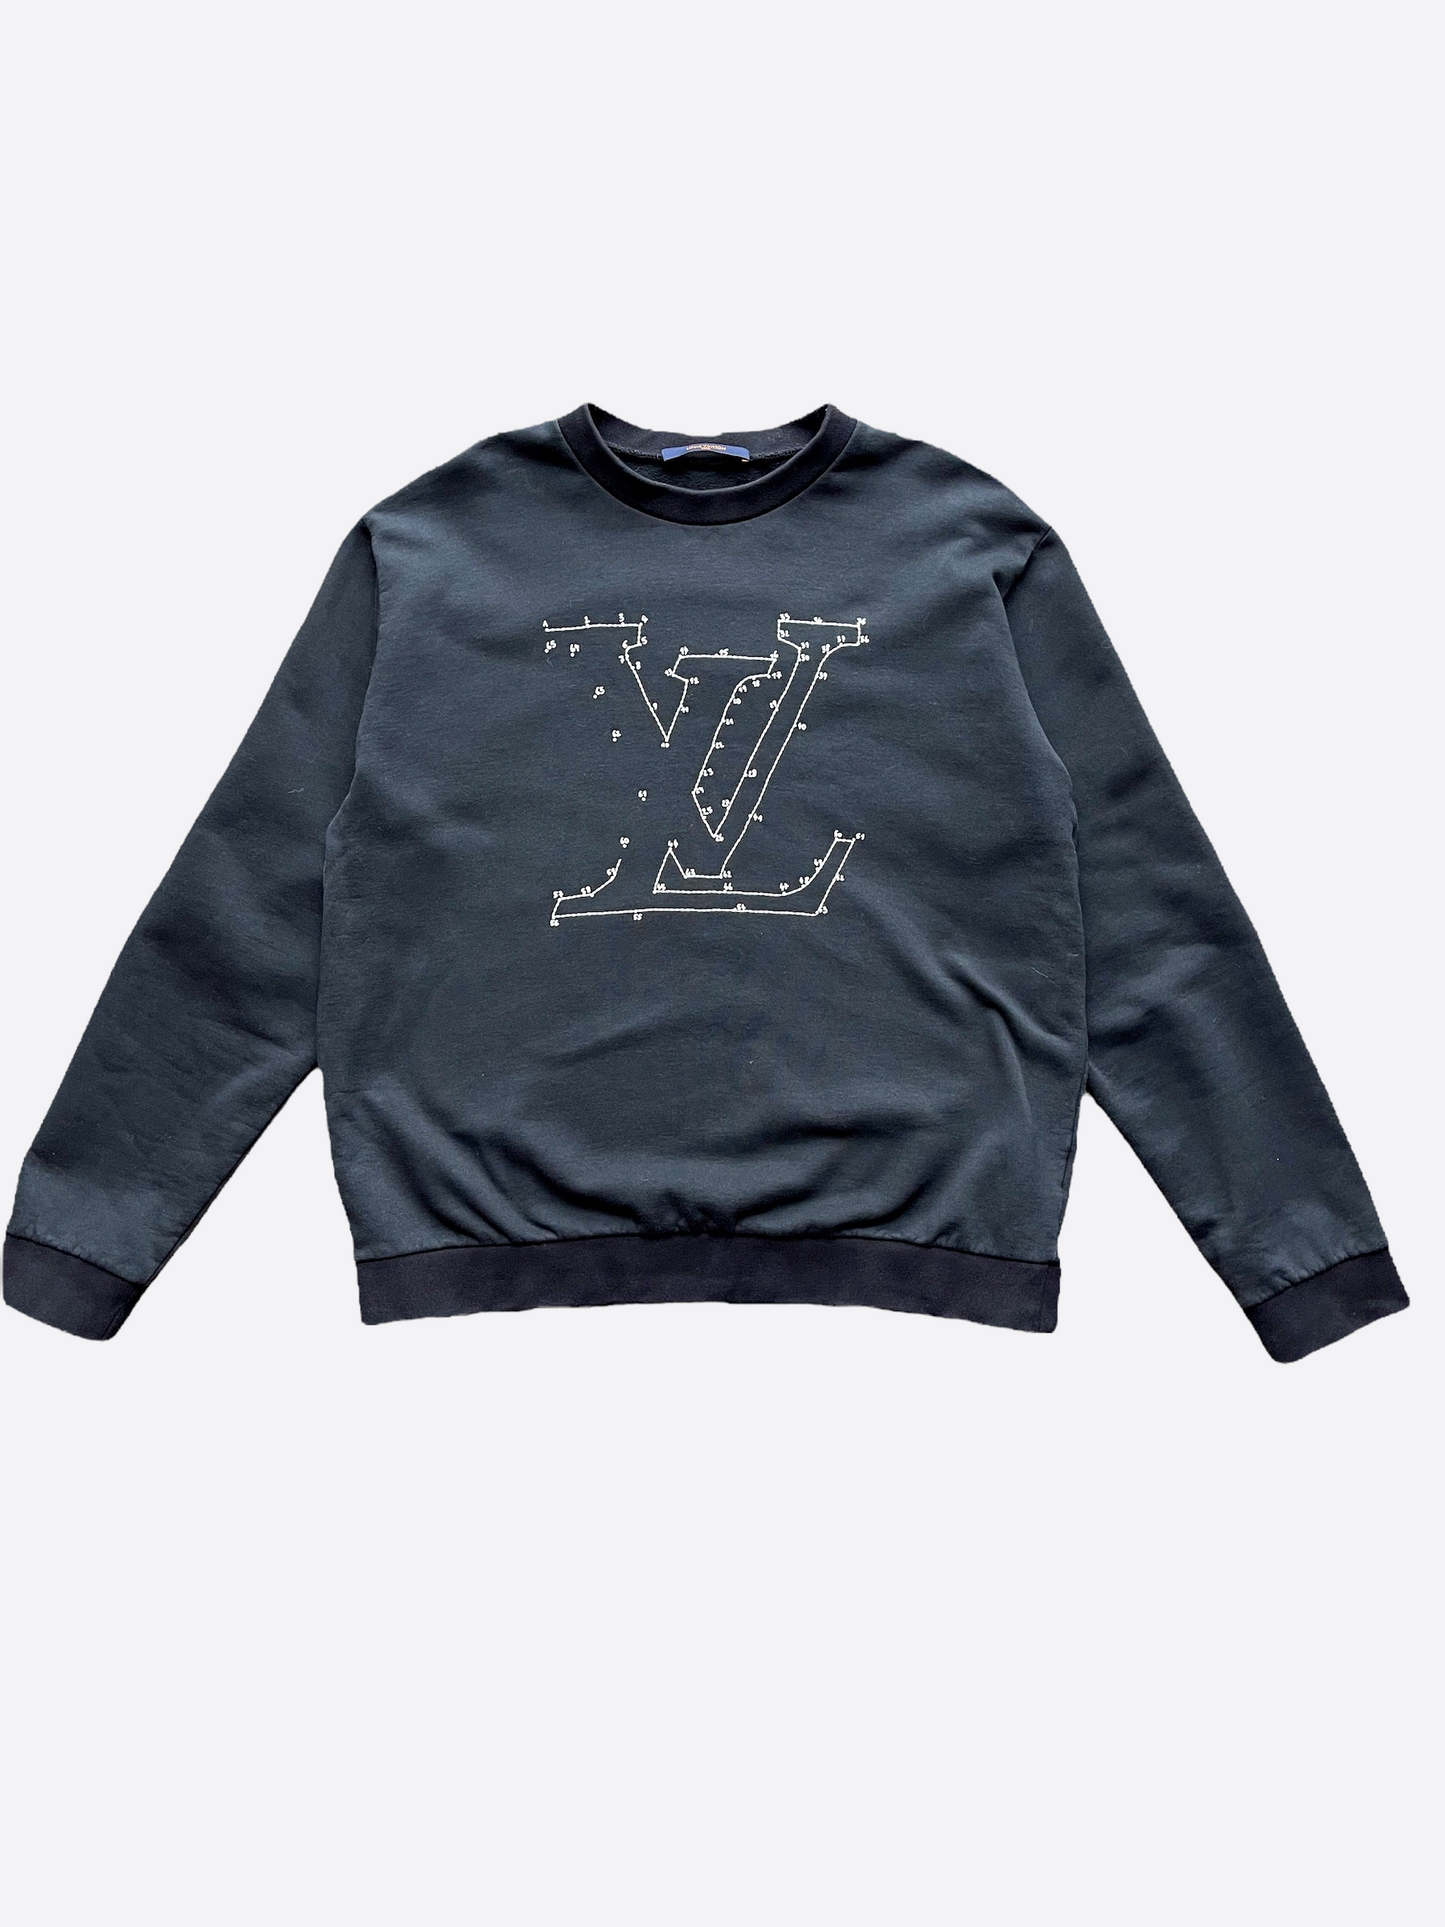 Louis Vuitton Monogram Cashmere Crewneck Sweatshirt Black/Pink Size L  #90387